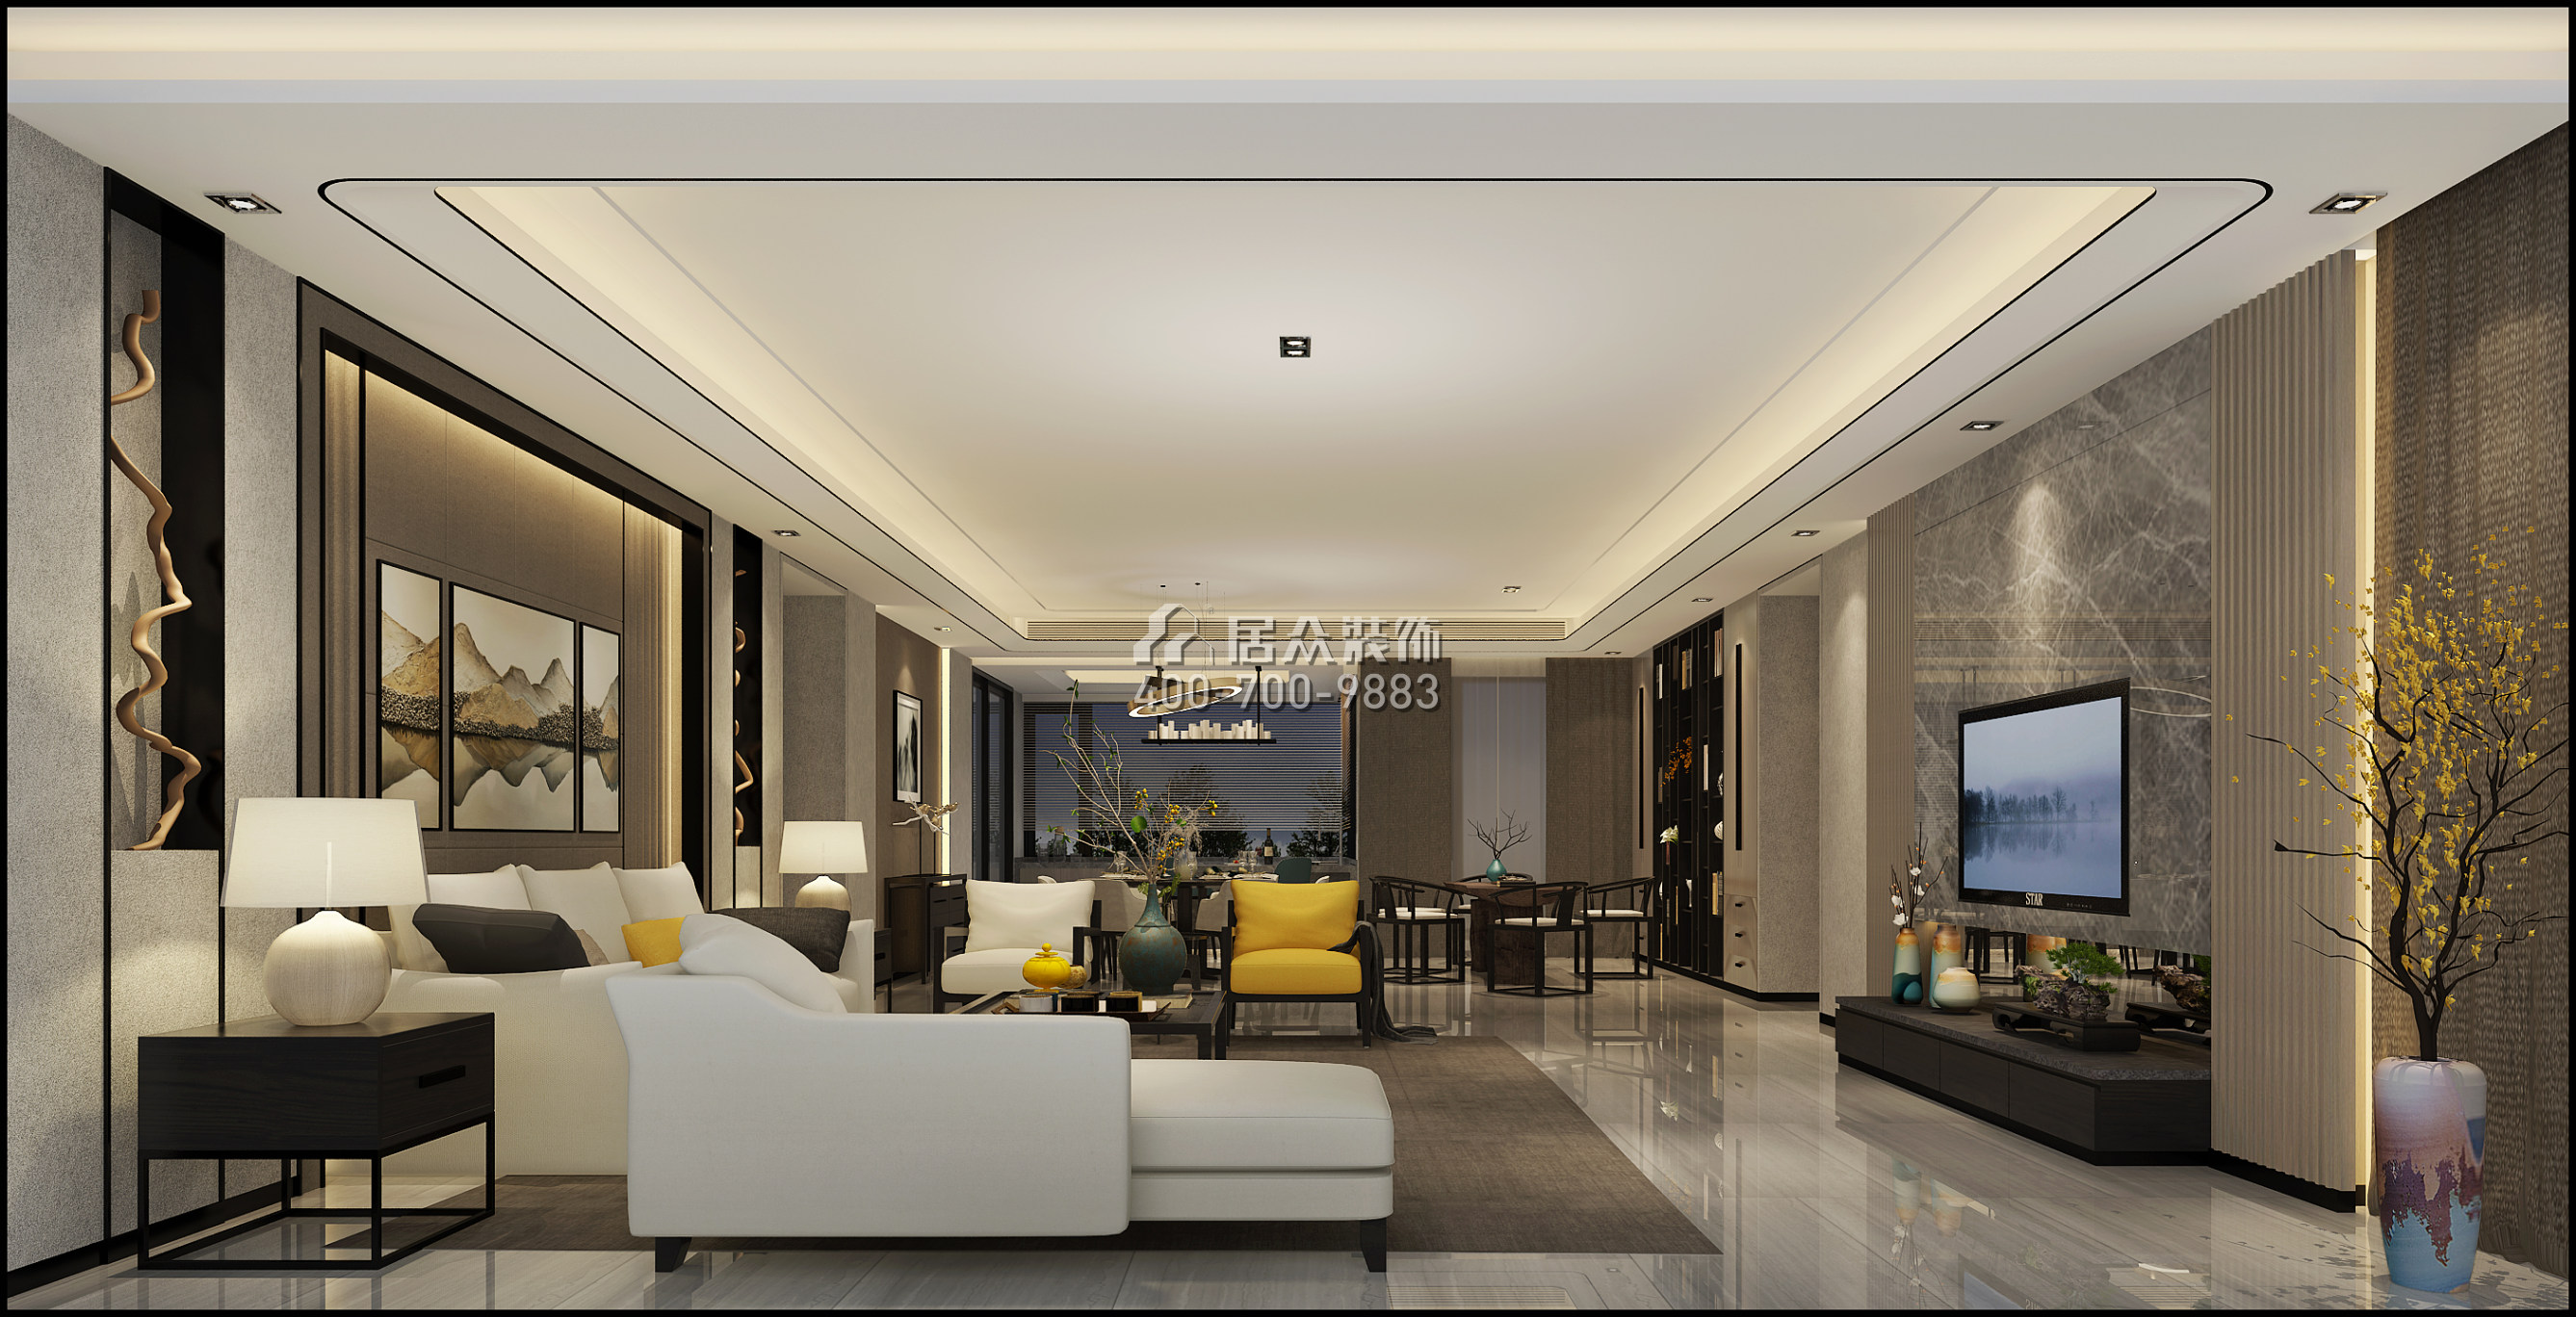 錦繡花園四期280平方米現代簡約風格平層戶型客廳裝修效果圖